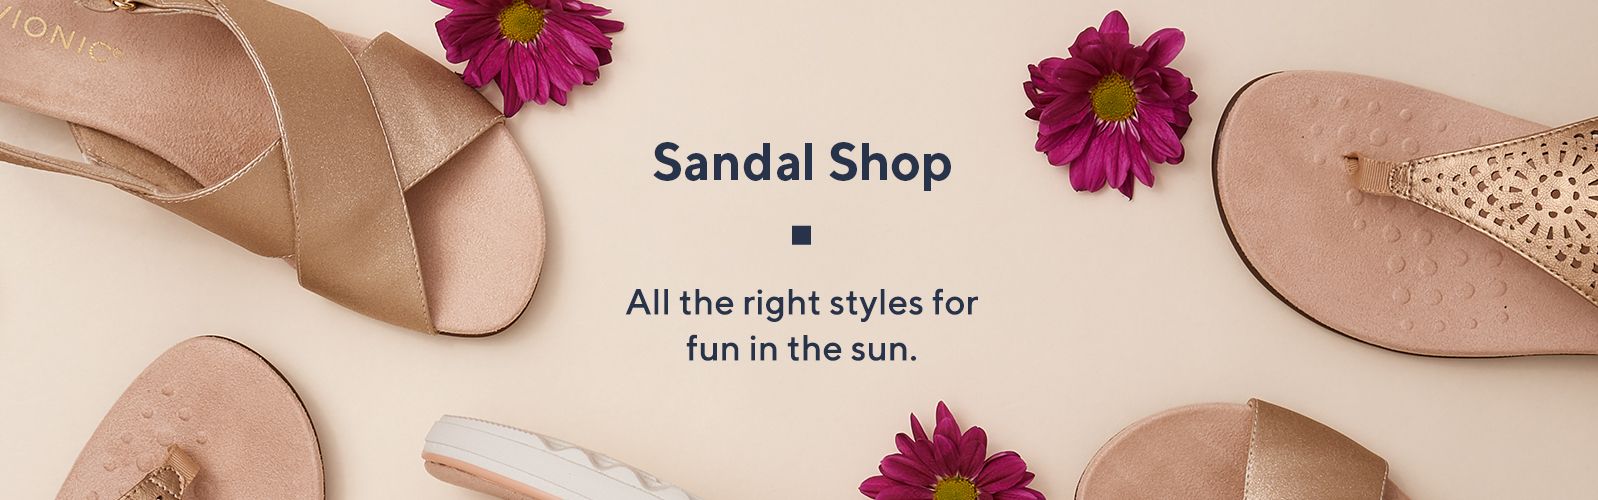 sandal shop